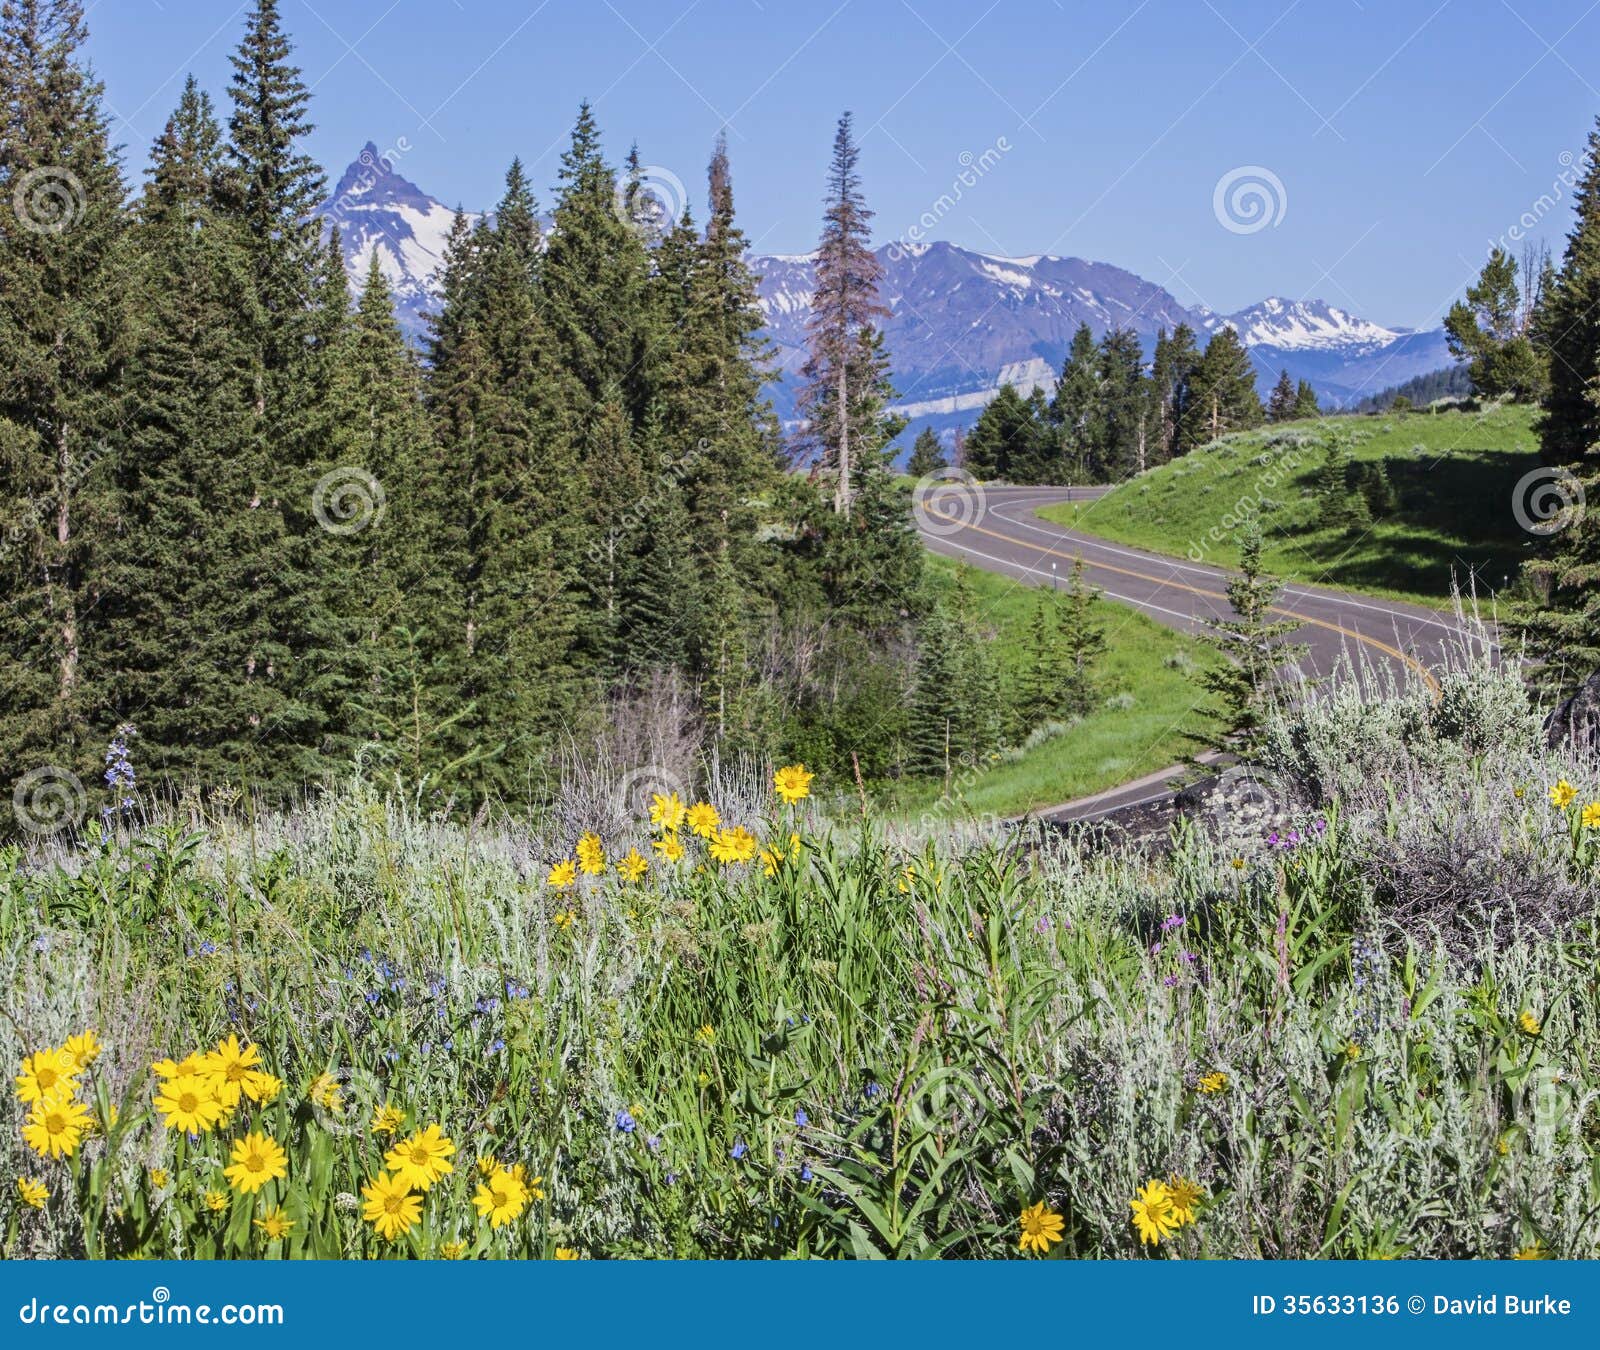 chief joseph scenic highway crandall pilot peak beartooth wildflowers